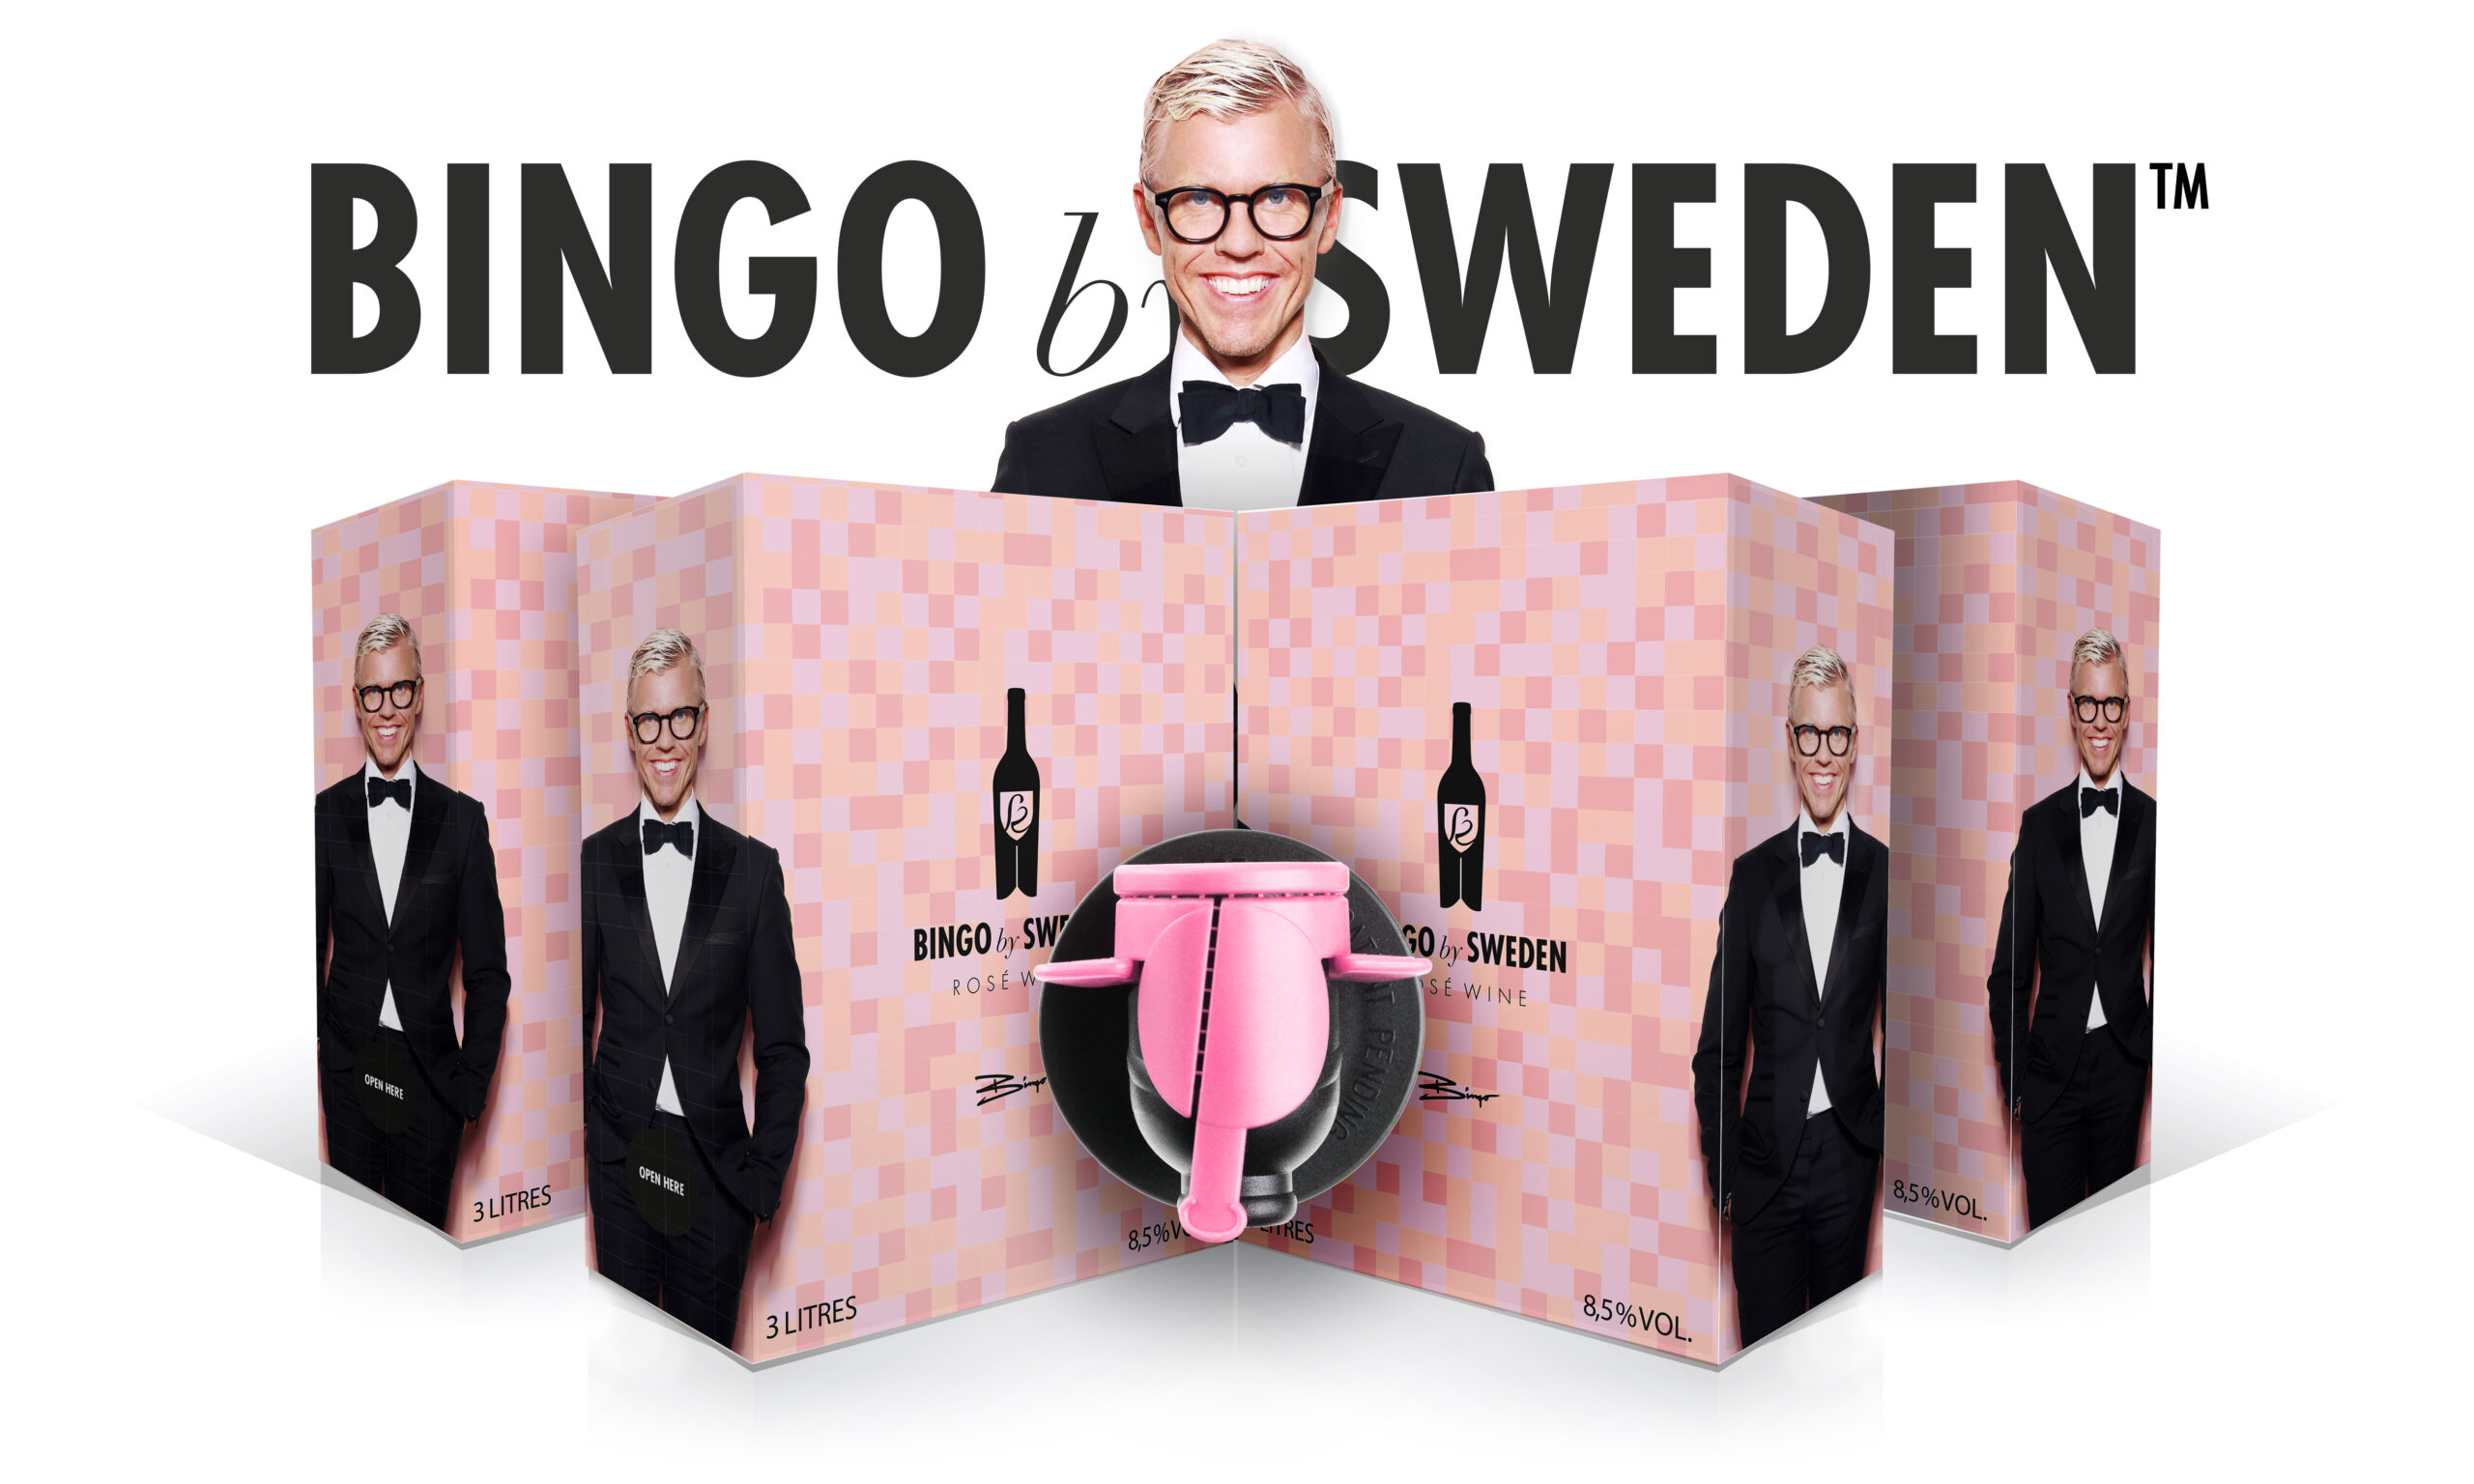 [REFUSERADE IDÉER] Första tanken var alltså att försöka sälja TVå lådor vin per säljtillfälle. Dock uppskattades inte grundidén av Systembolaget, med all rätt. Hur årets upplaga av Bingo by Sweden kommer att se ut avslöjar vi inom kort. Stay tuned!